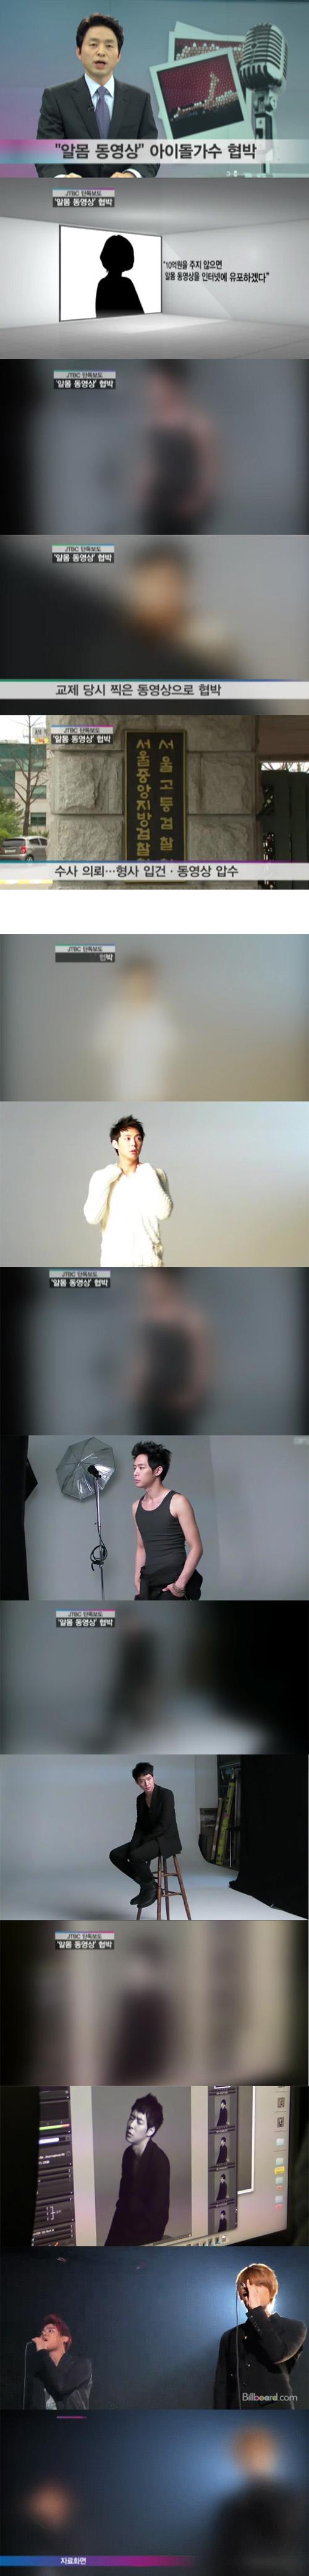 idol2.jpg : 알몸 동영상 협박 아이돌가수.jpg